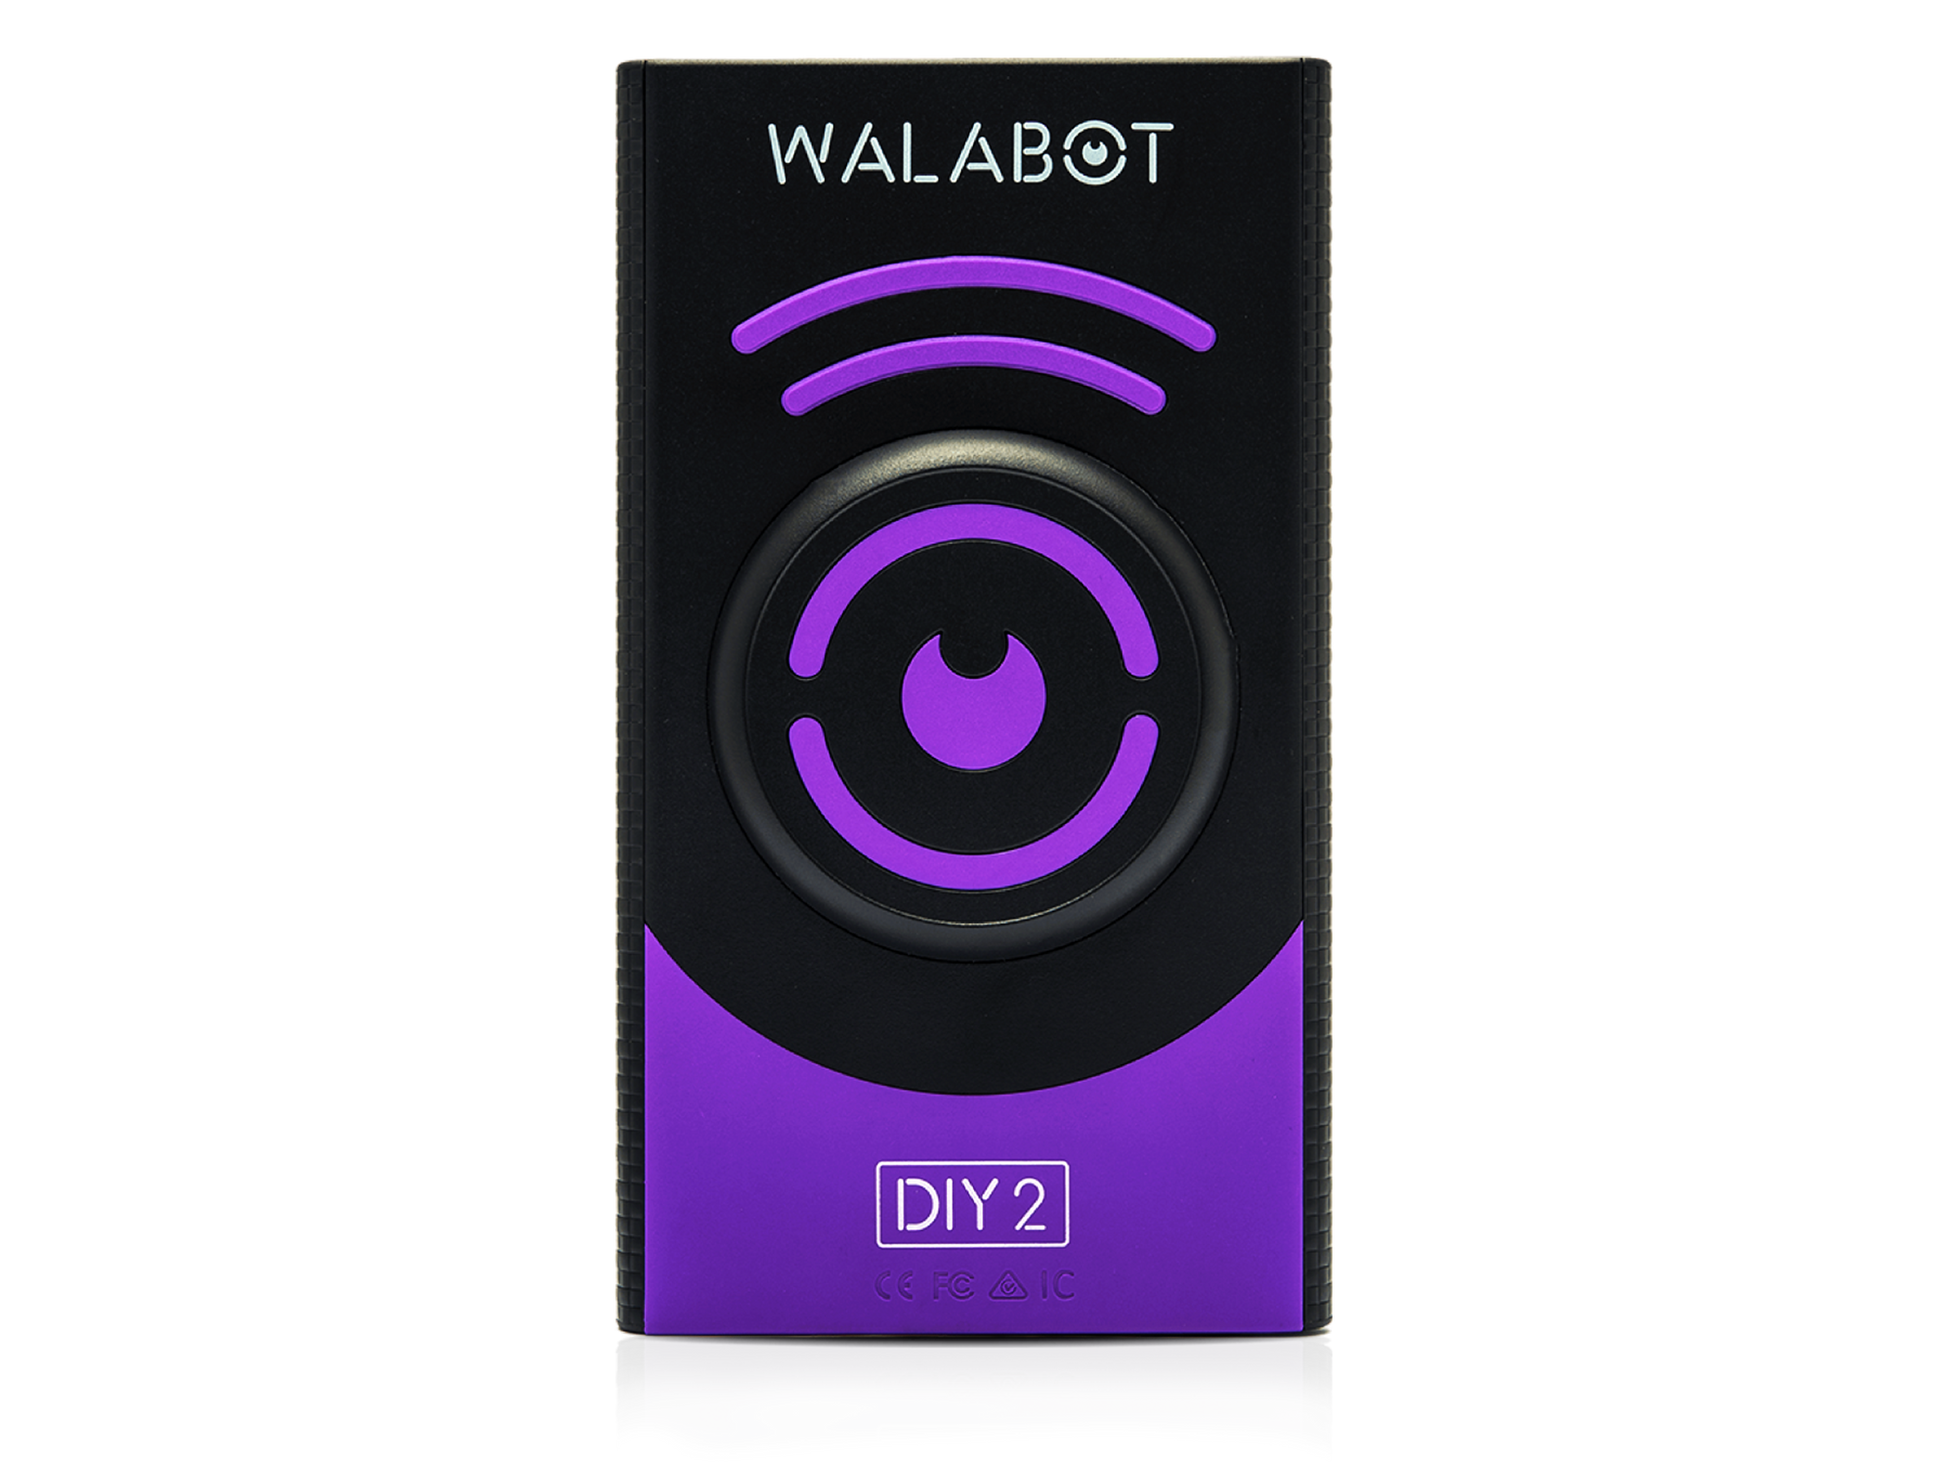 Walabot DIY 2 Device - Walabot.com